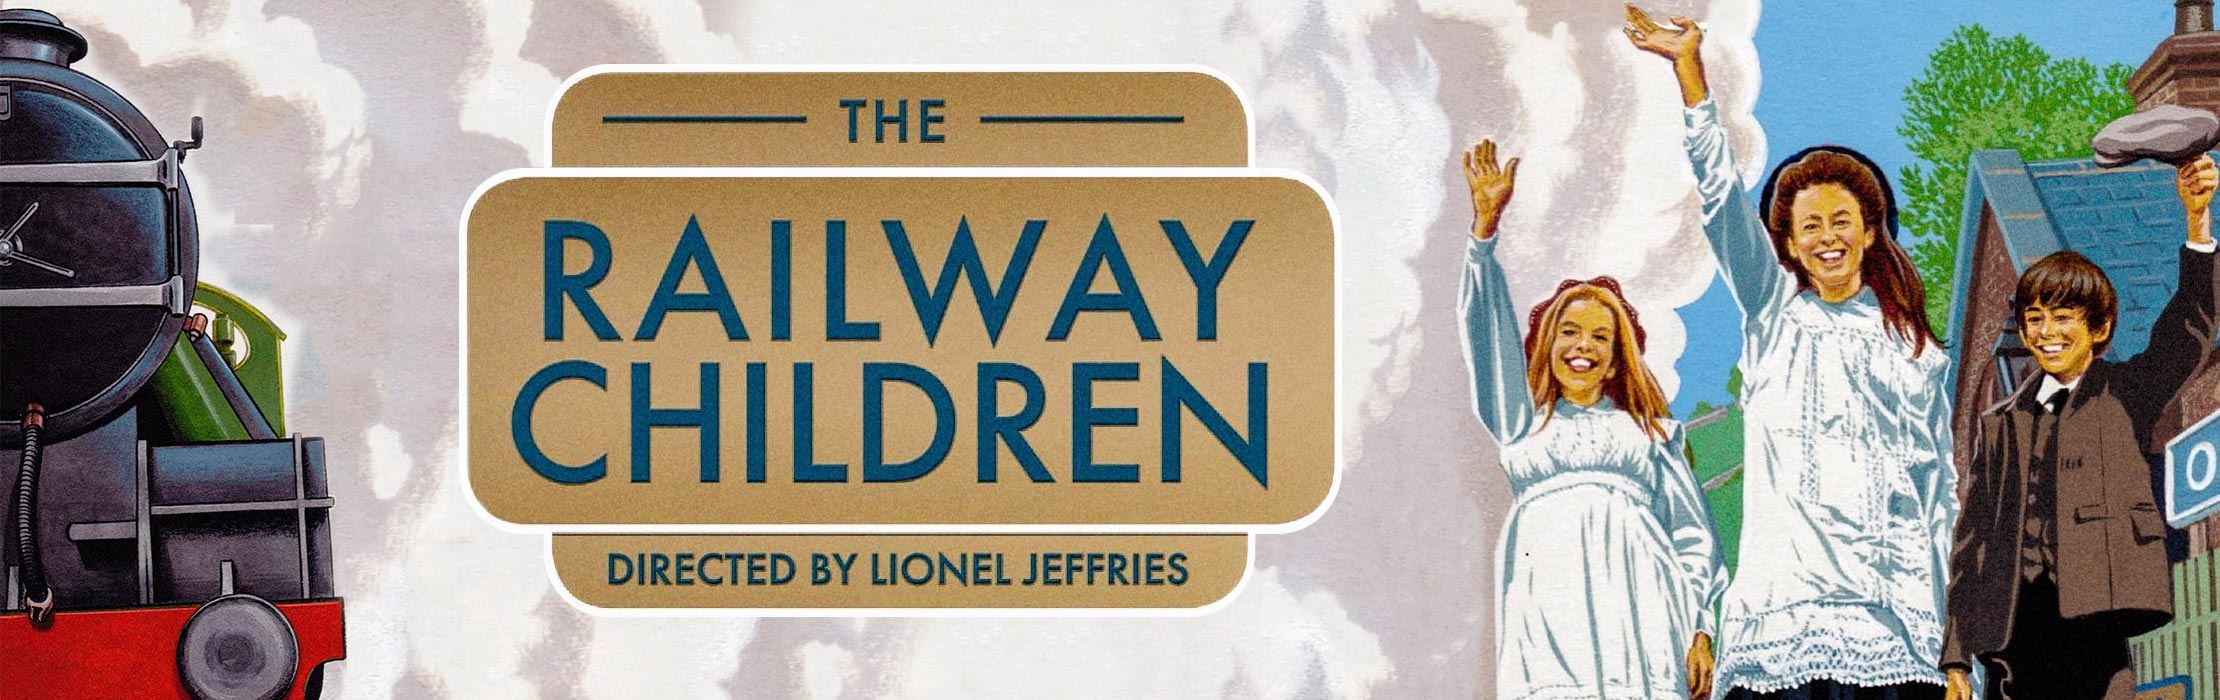 The Railway Children 1970